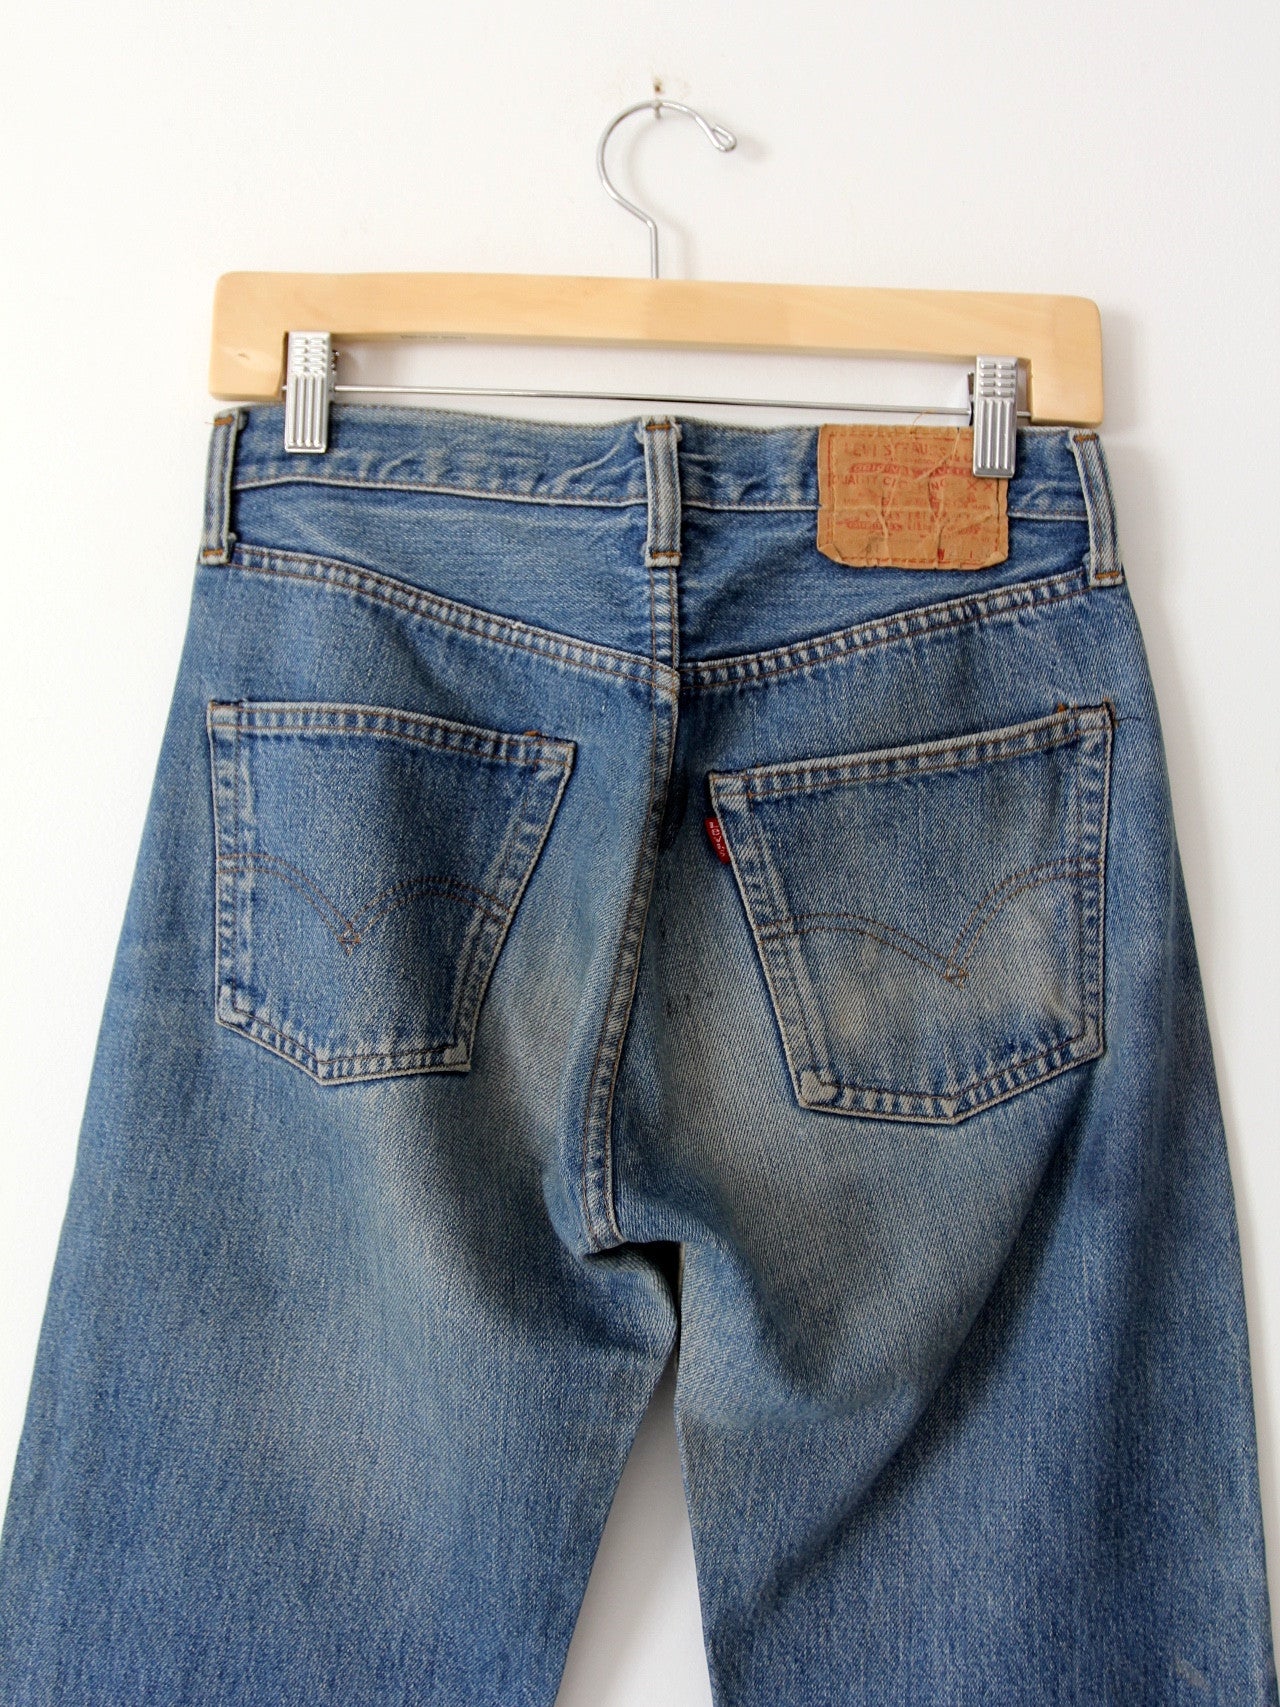 vintage Levis red line selvedge denim jeans, 29 x 31 – 86 Vintage